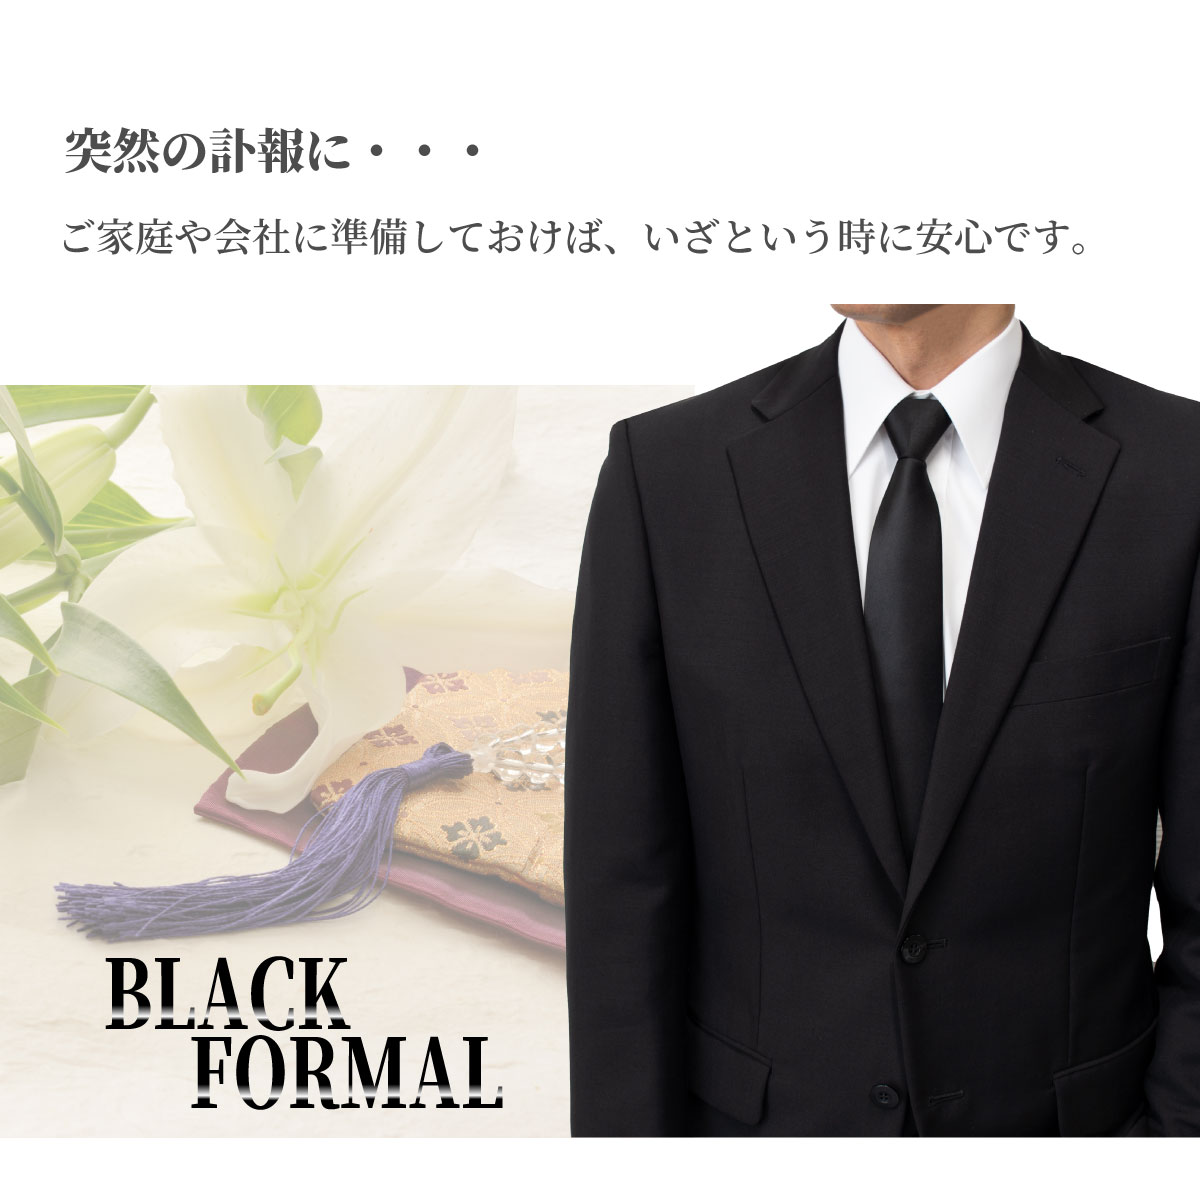 日本製礼装ネクタイ黒4